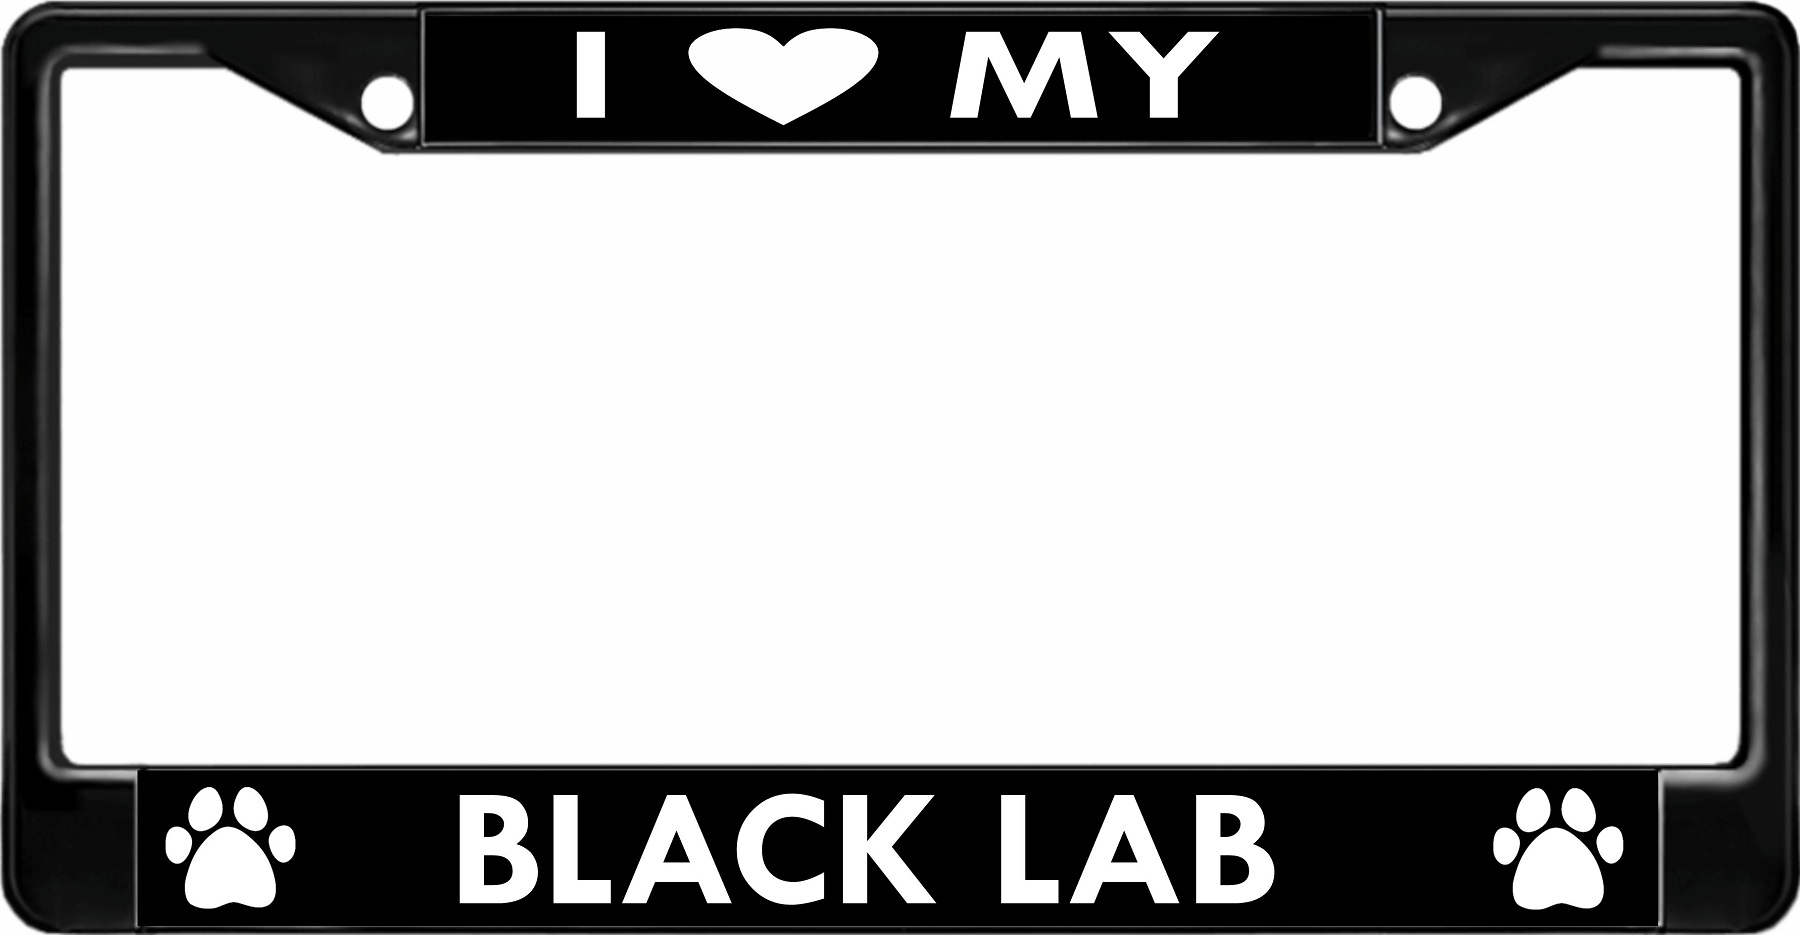 License Plates Online I Love My Black Lab Black License Plate Frame